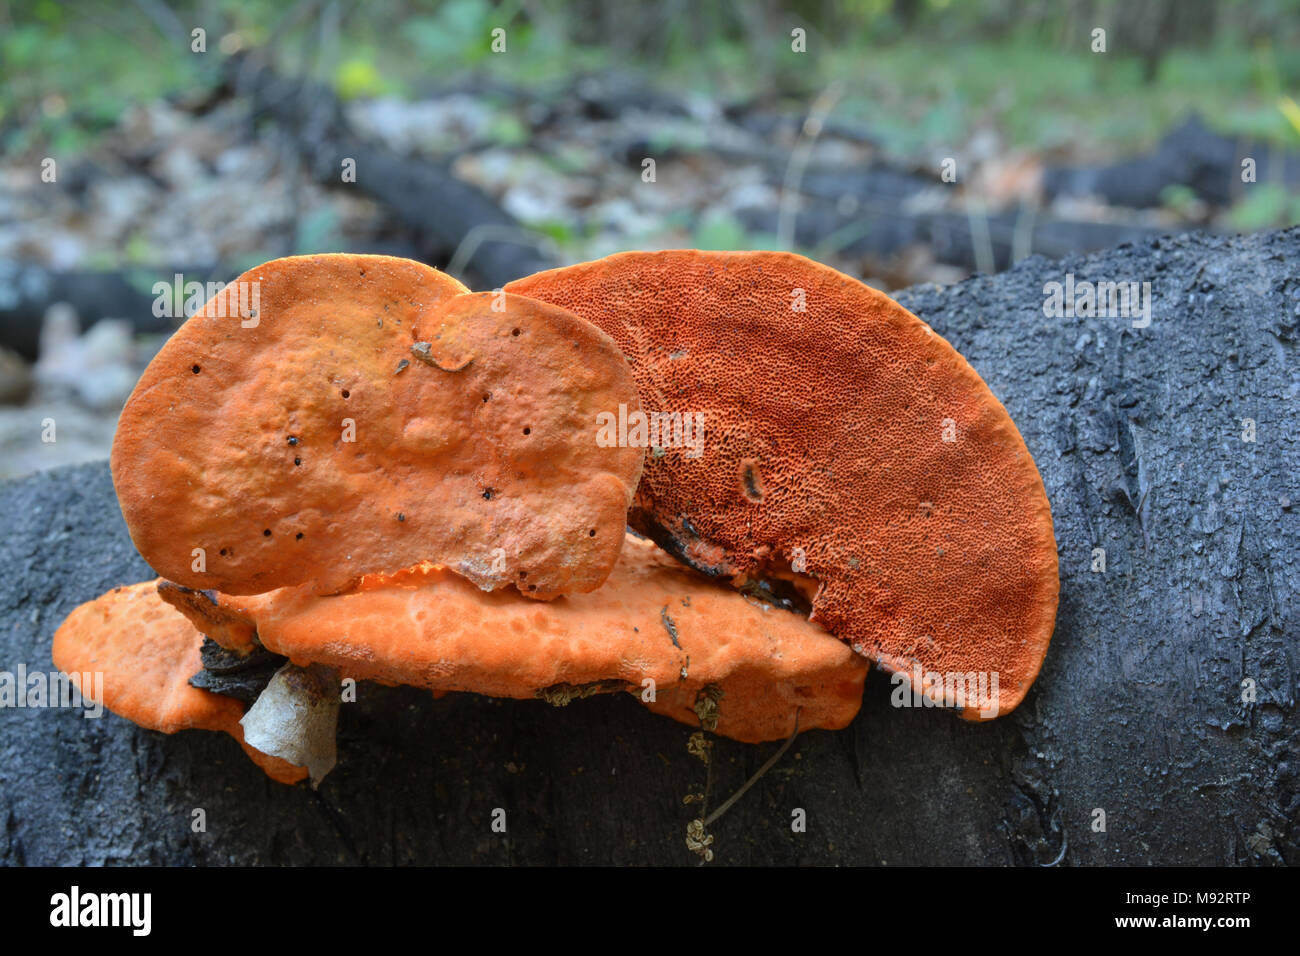 Pycnoporus cinnabarinus, noto anche come il cinabro polypore, funghi saprofiti, bianco-rot decomposerin un bosco su un moncone marcio Foto Stock